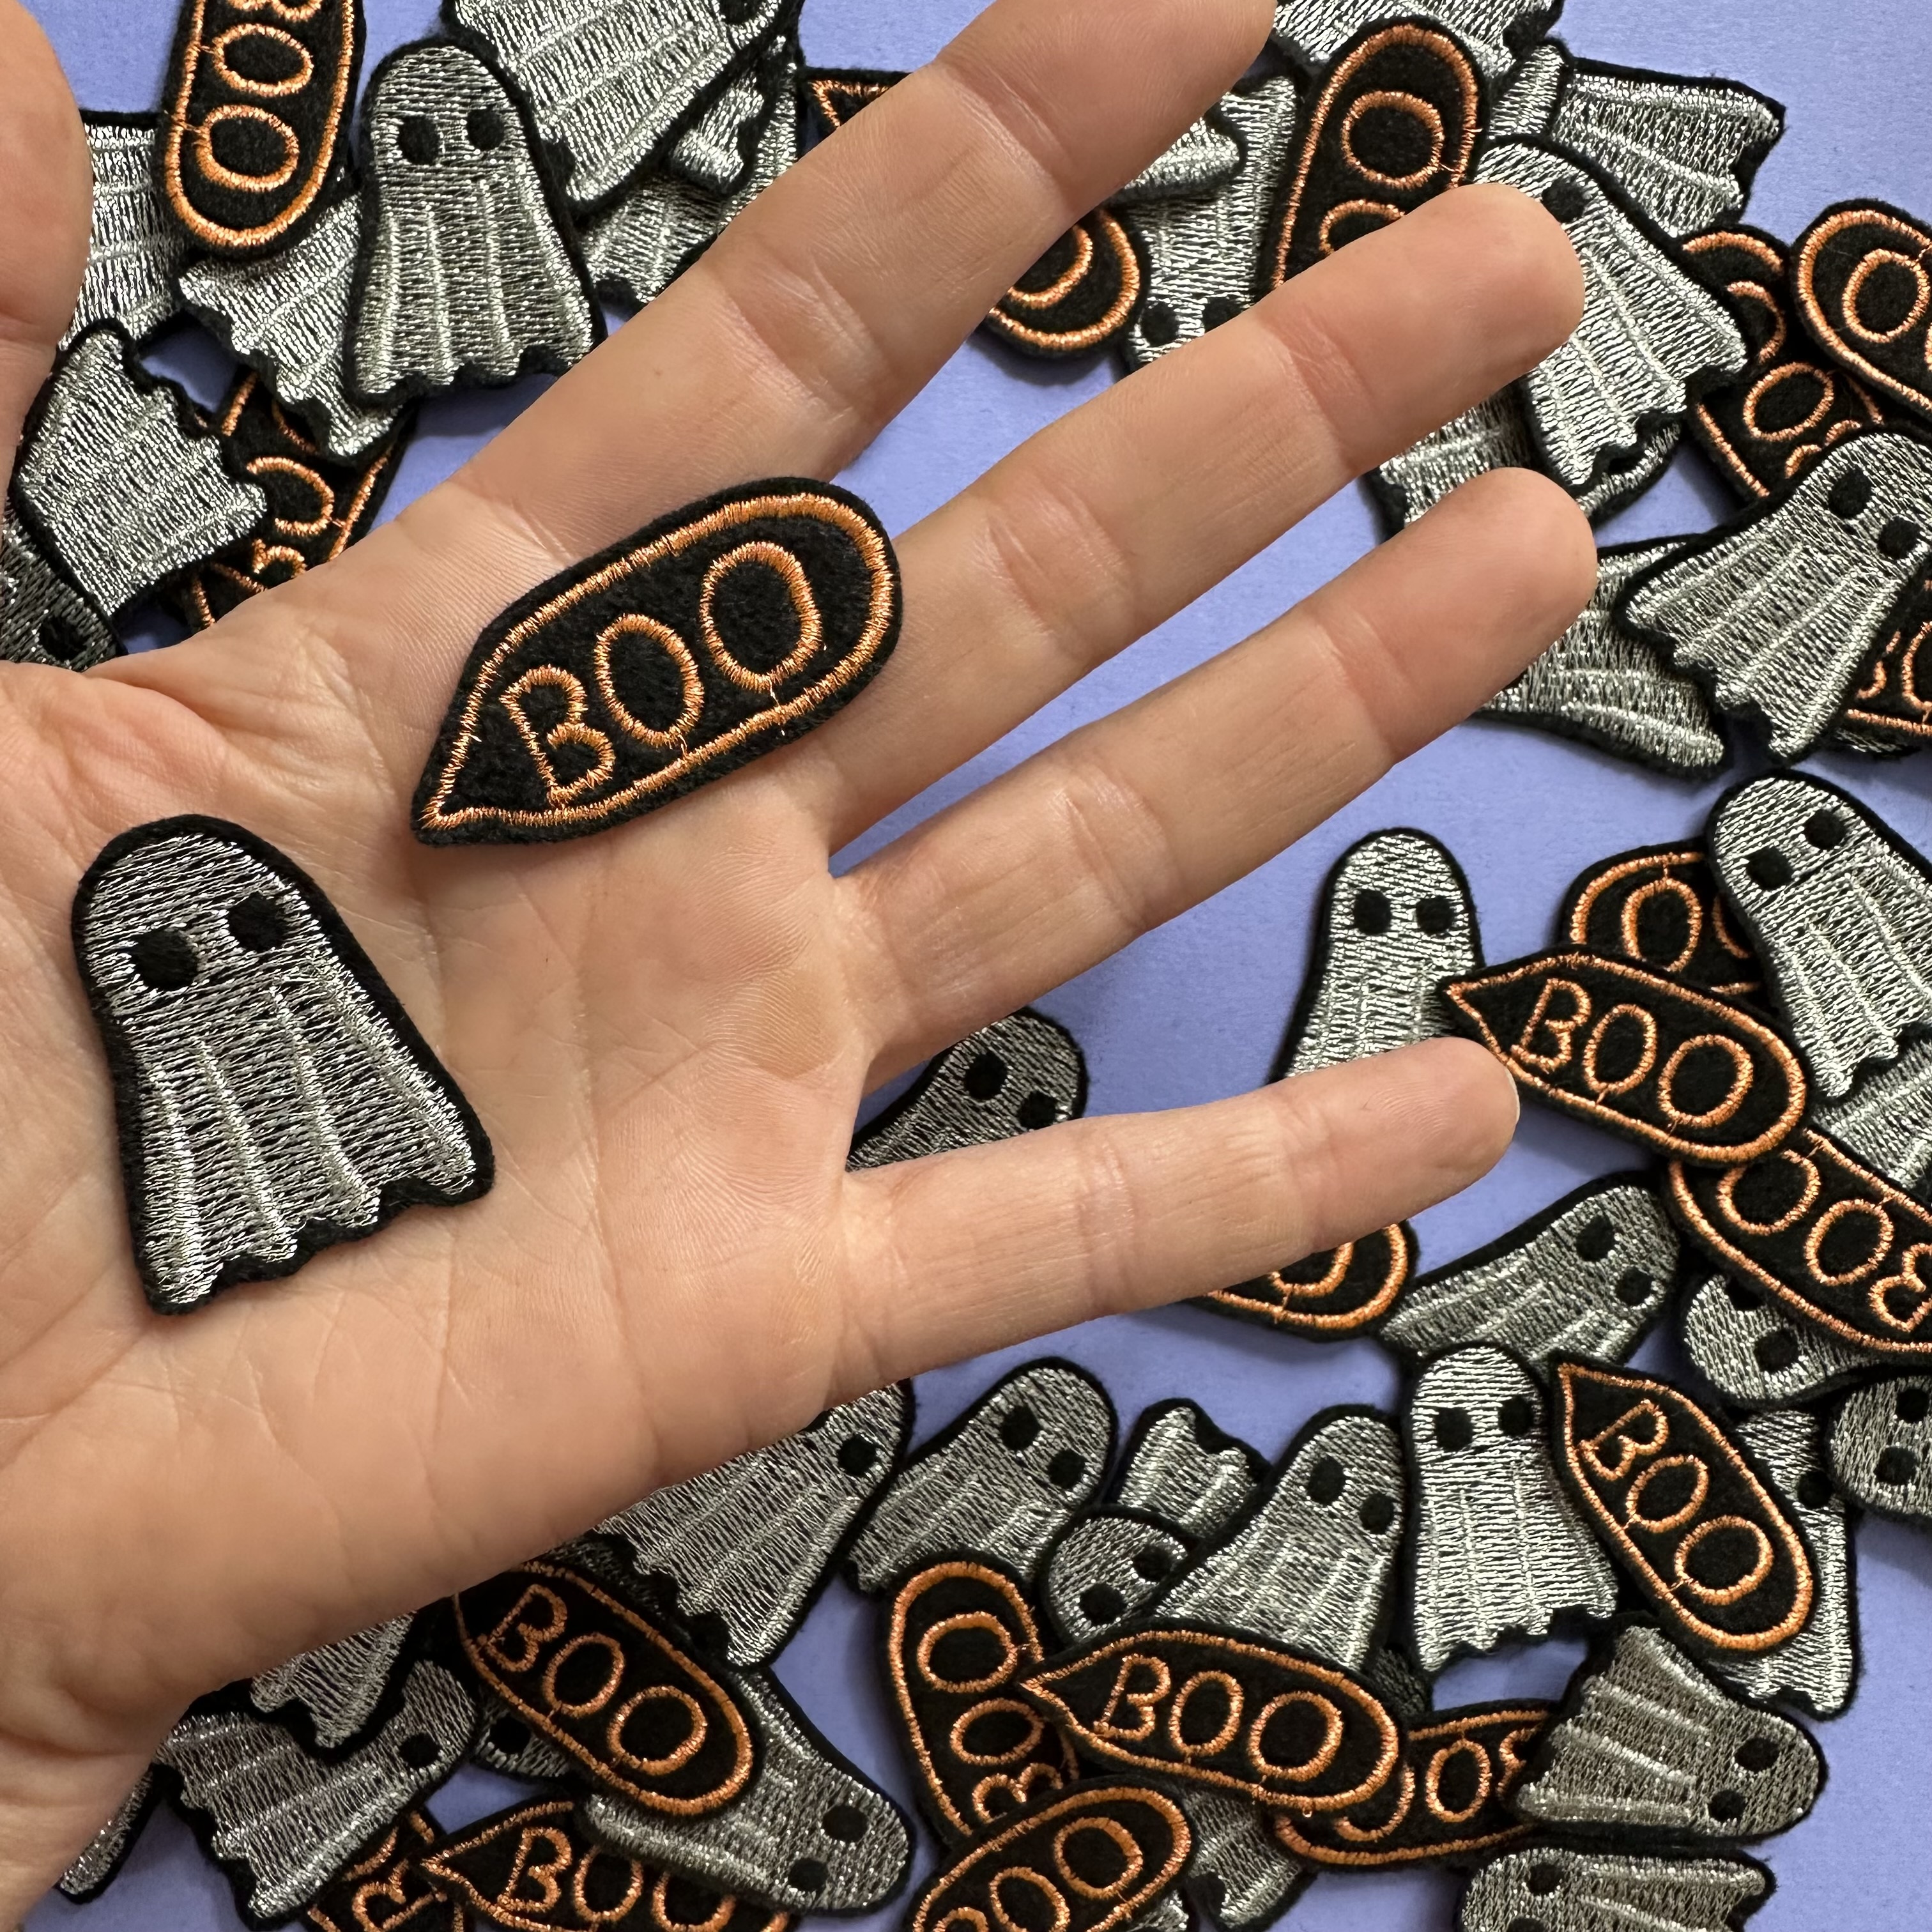 2 kleine glitzer Aufbügler Gespenst und SPrechblase Boo präsentiert auf einer Hand. Die Größe der kleinen Flicken entspricht einer halben Fingerlänge einer Frauenhand.